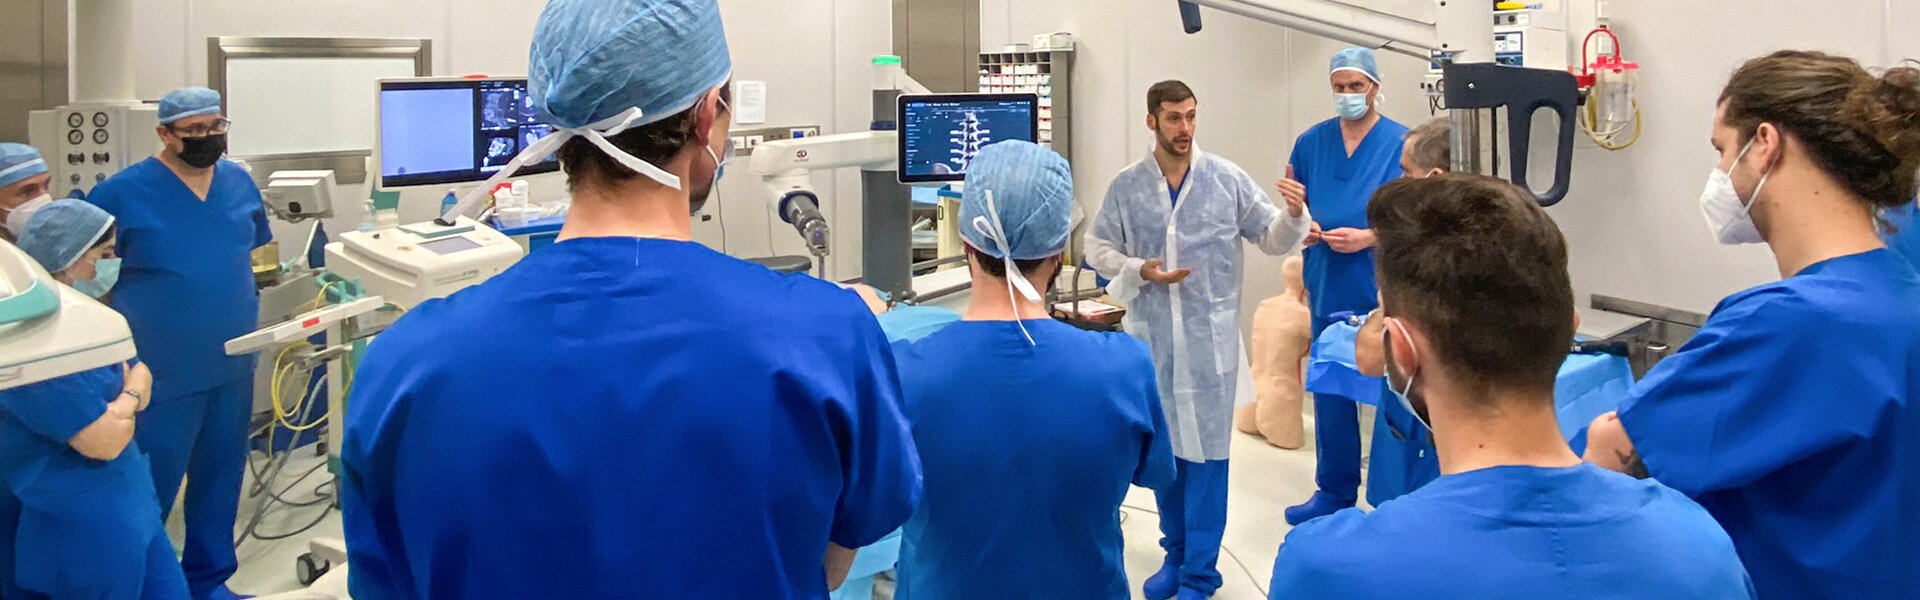 Medico e robot – La nuova frontiera della neurochirurgia vertebrale